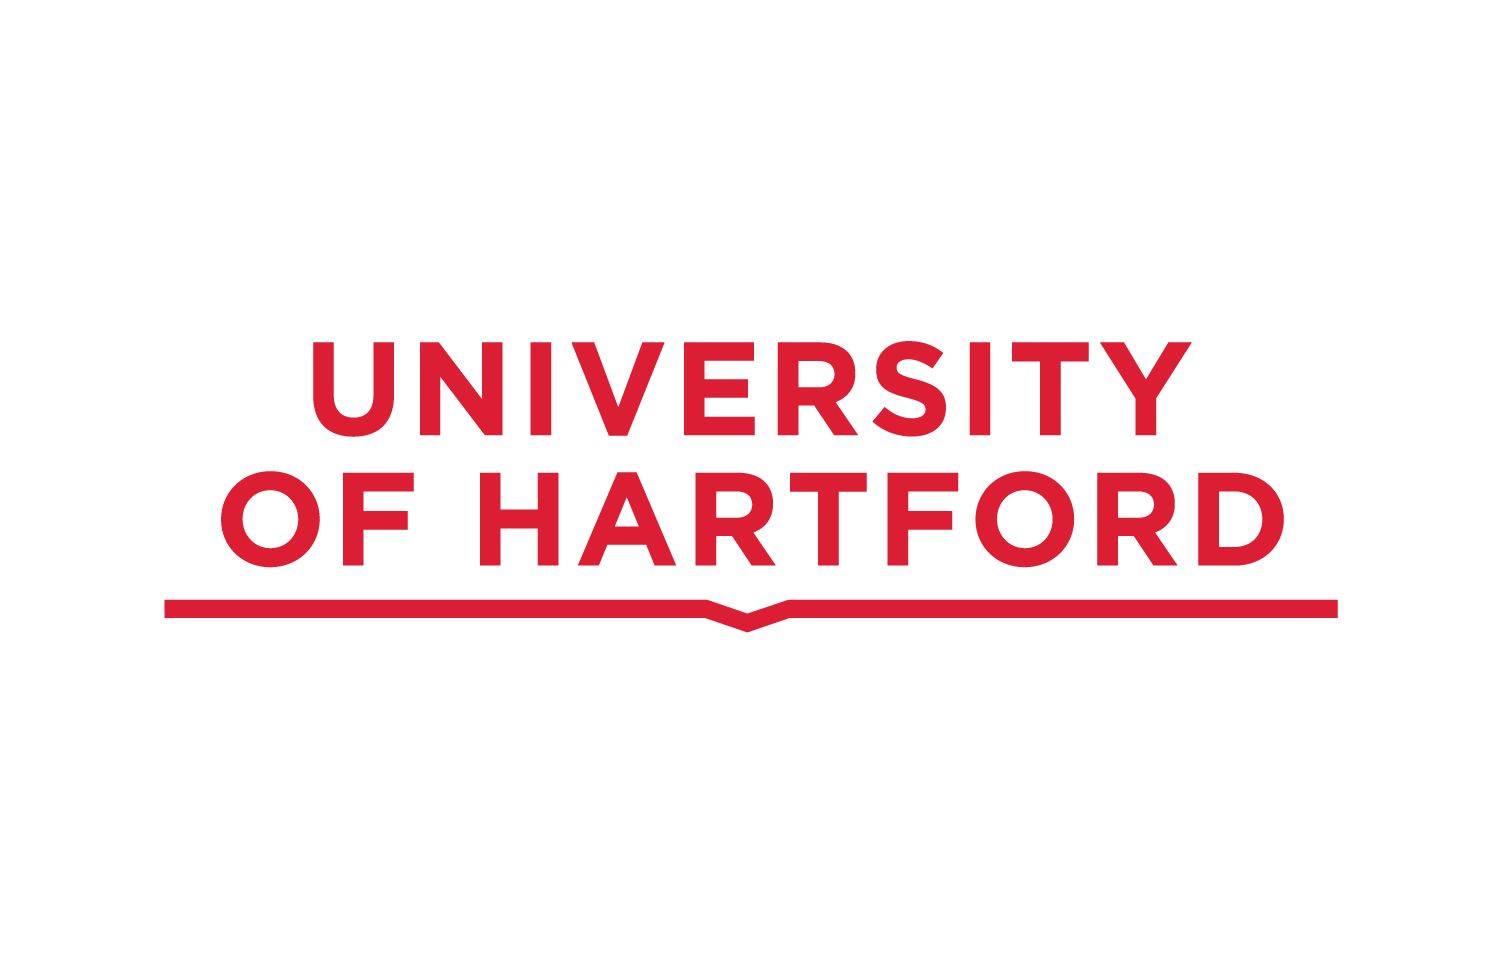 University of Hartford logo